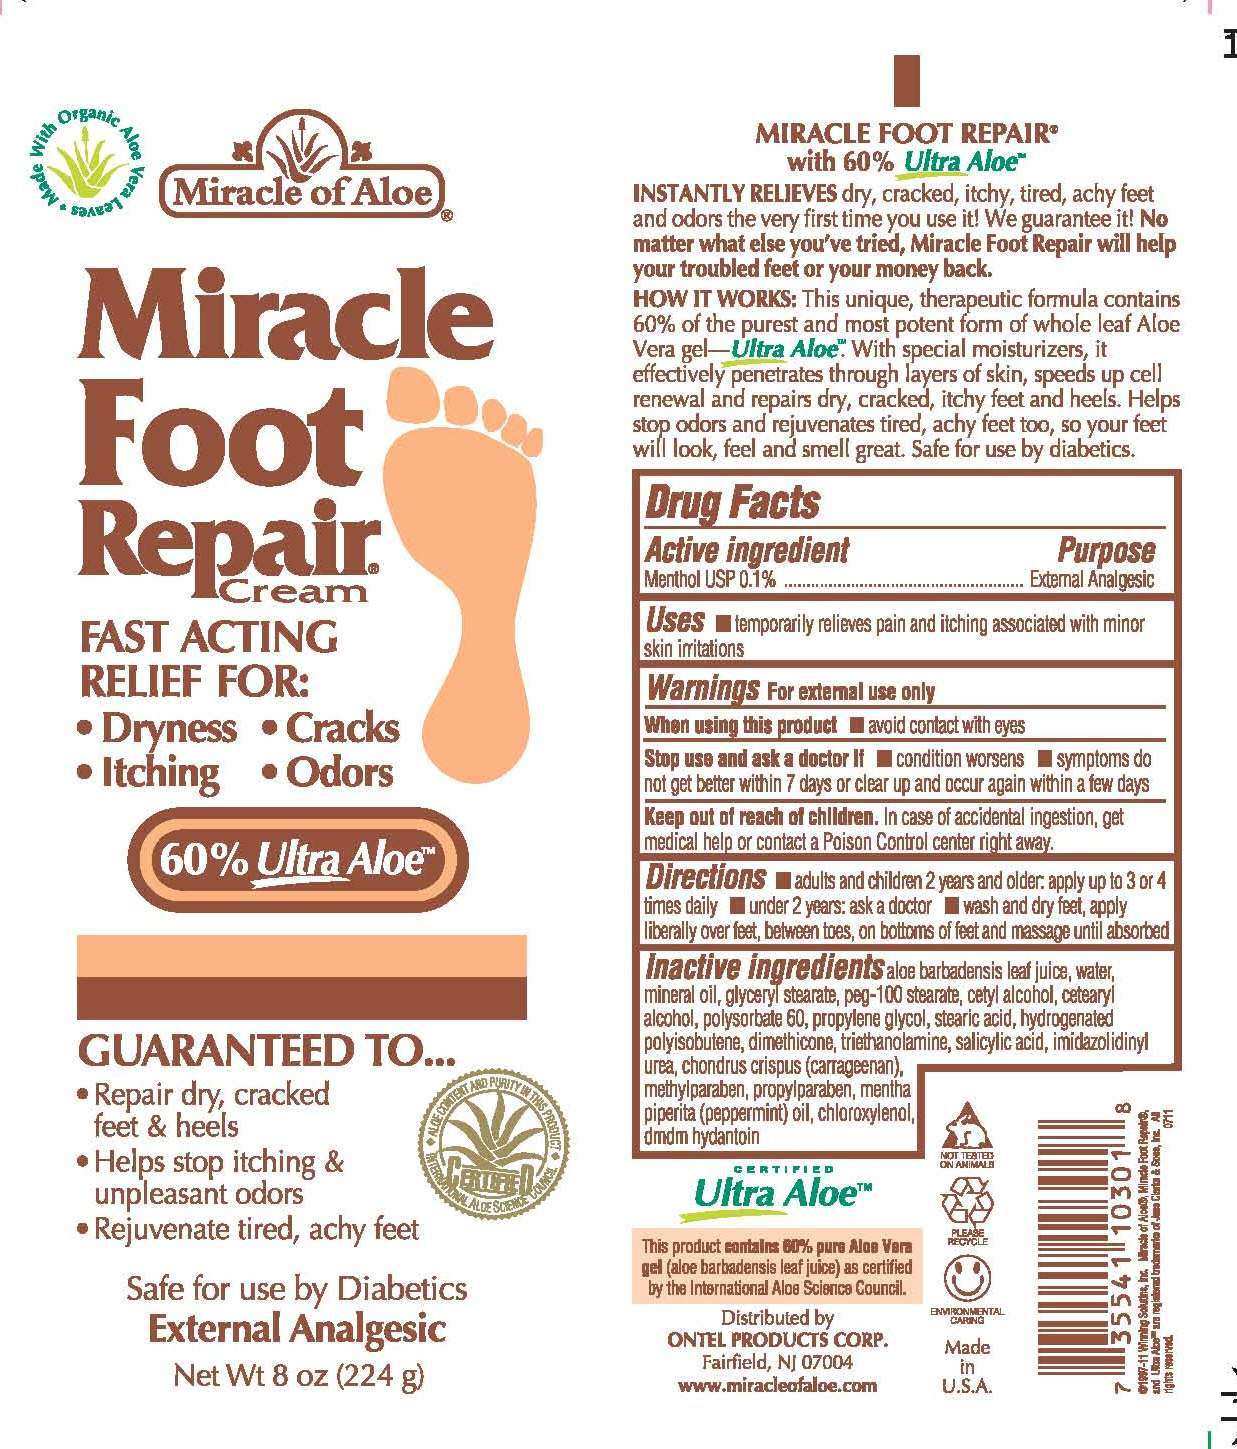 Miracle Foot Repair